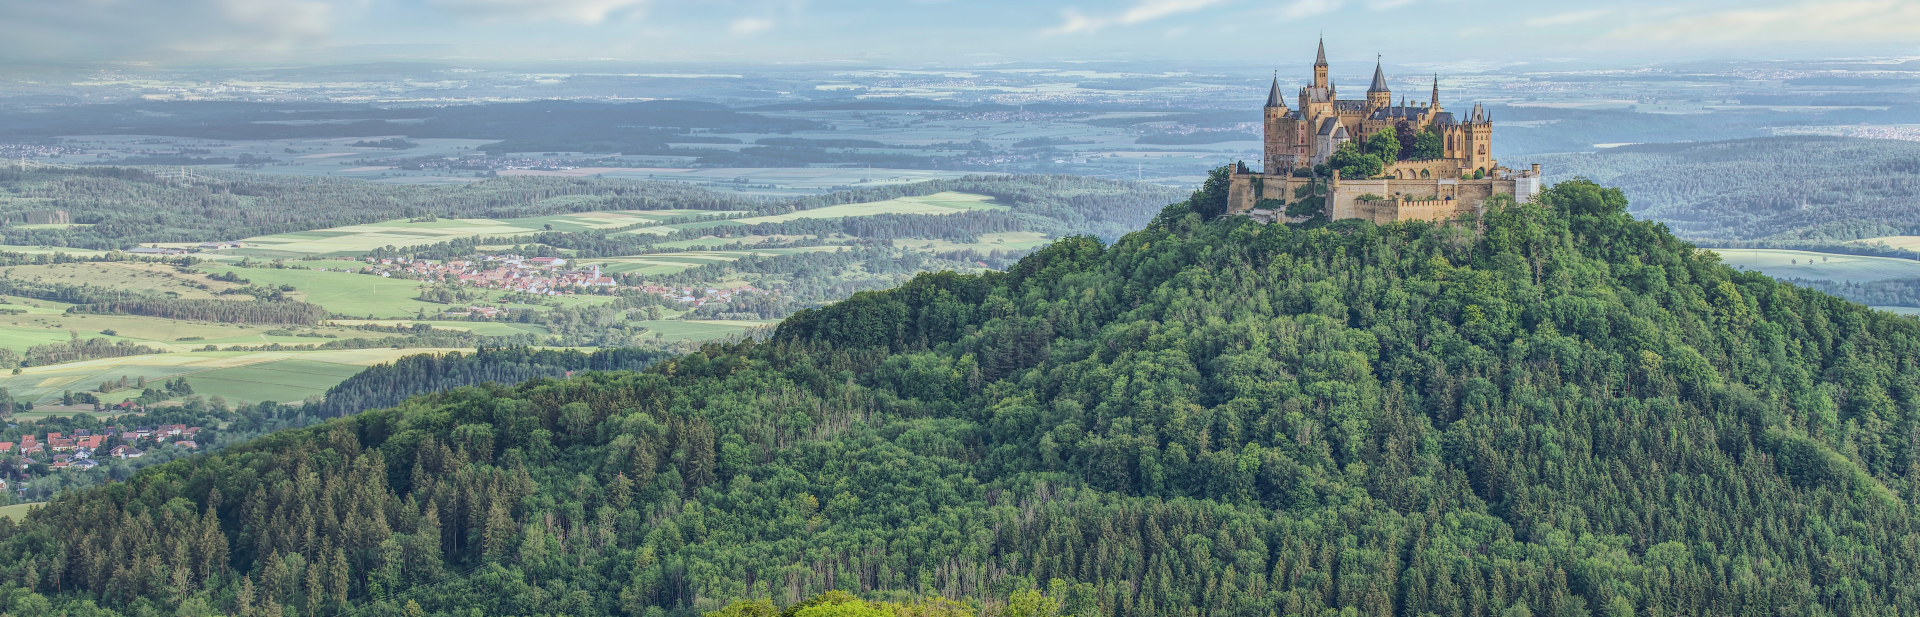 uitzicht over het landschap met daarin het prachtige Hohenzollern